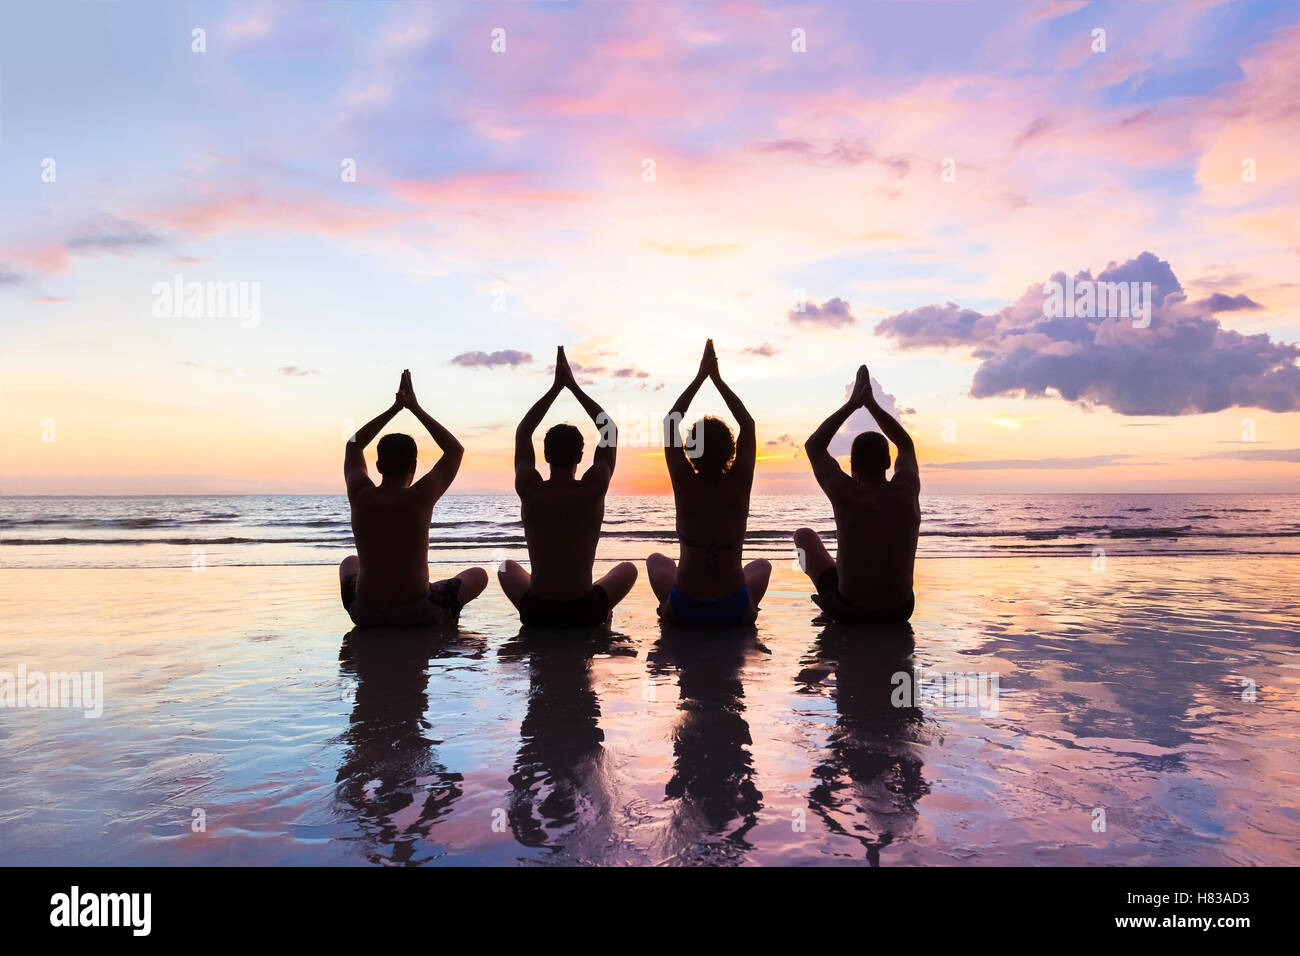 Groupe de quatre personnes qui pratiquent la méditation et le yoga sur la plage au coucher du soleil - Notion sur les amis, la famille, l'harmonie et en bonne santé Banque D'Images